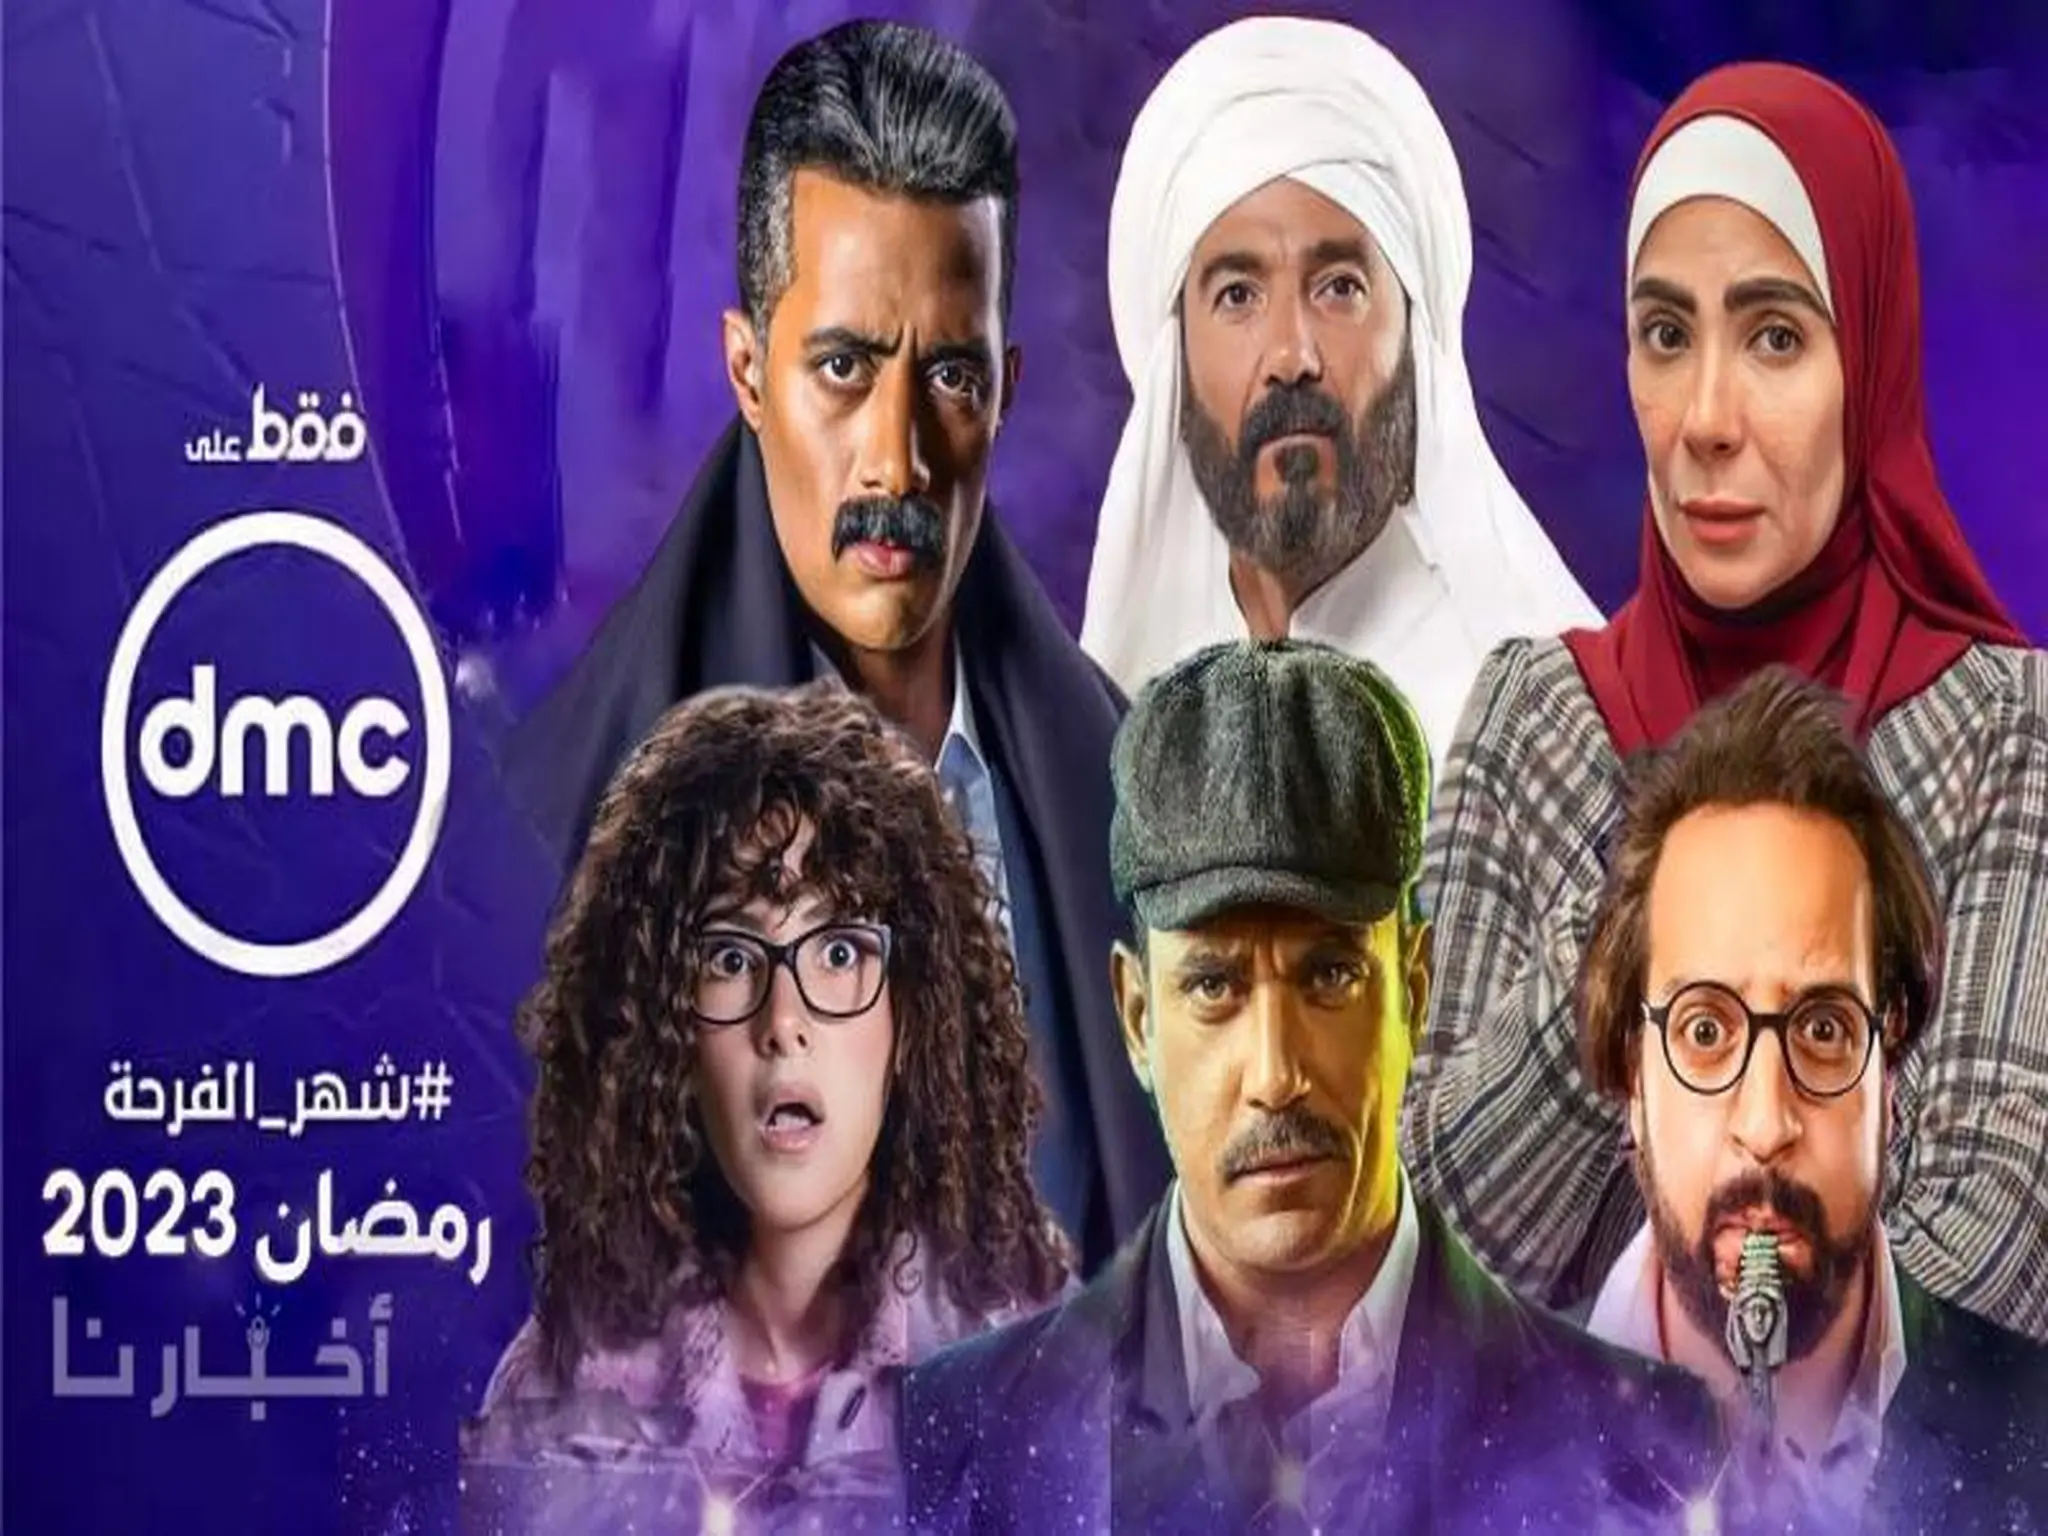 قائمة المسلسلات والبرامج على قناة "dmc" في شهر رمضان الكريم